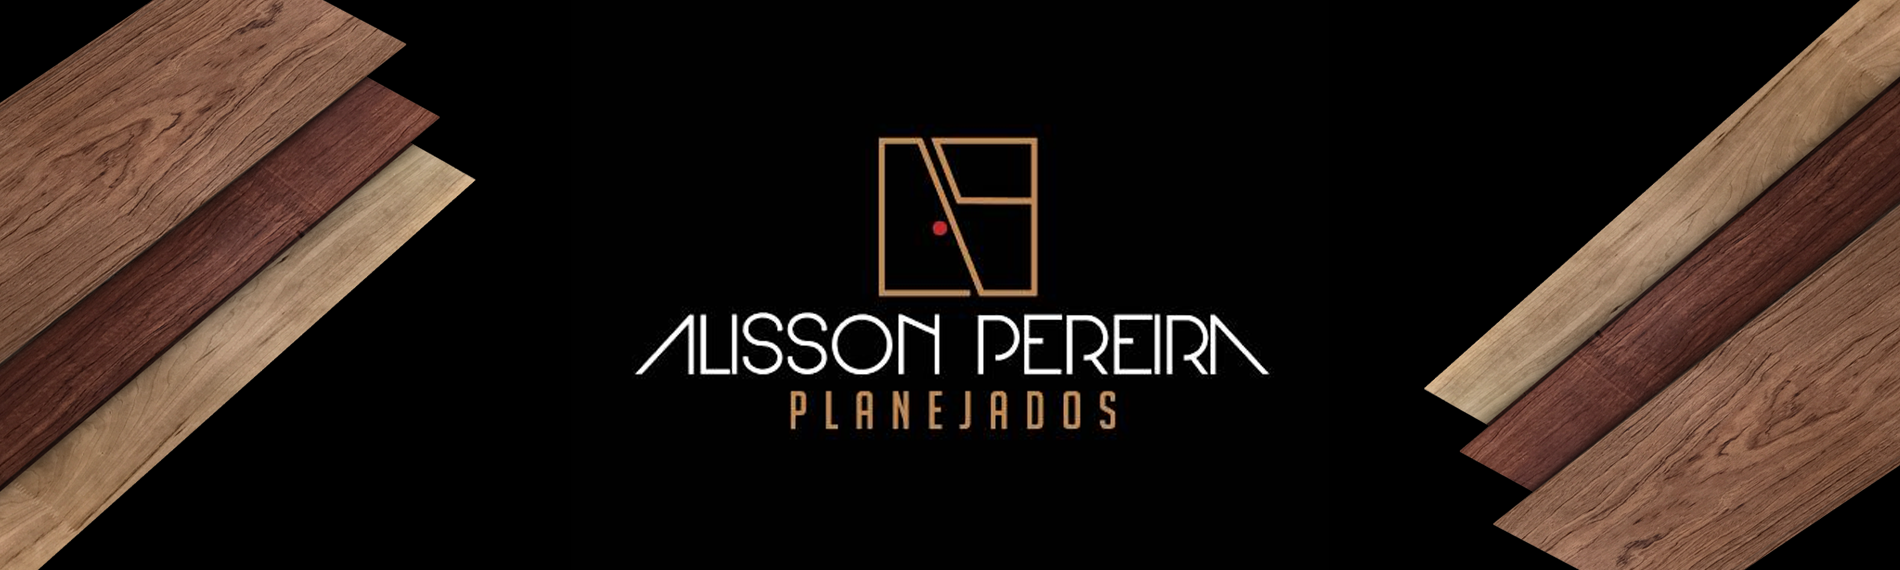 banner da empresa Alisson Pereira Planejados